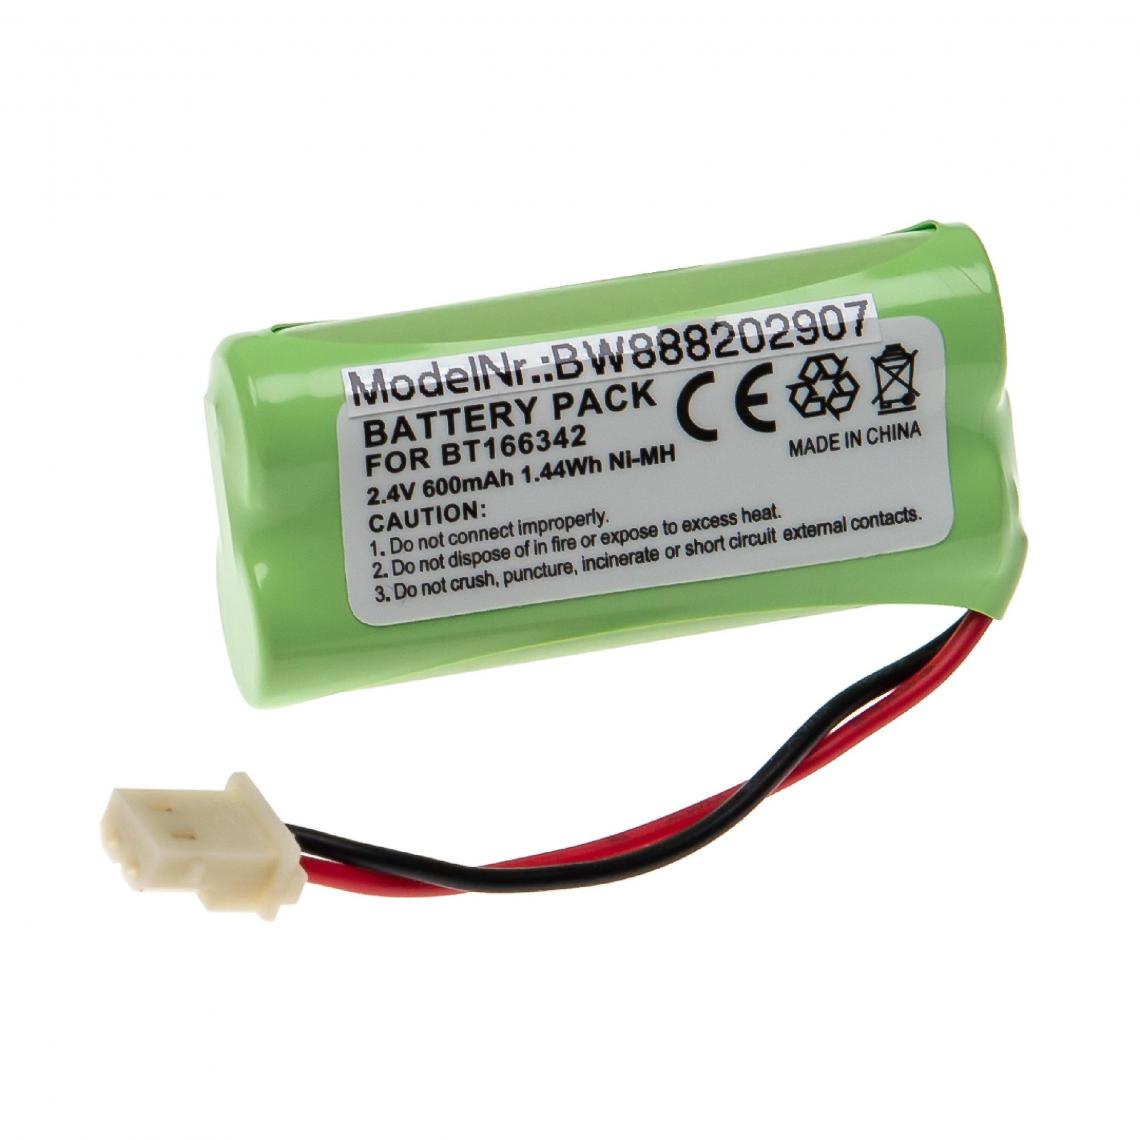 Vhbw - vhbw Batterie remplacement pour 89-1347-01-00, 89-1347-02, 89-1347-02-00, BT162342, BT166342 pour téléphone fixe sans fil (600mAh, 2,4V, NiMH) - Batterie téléphone